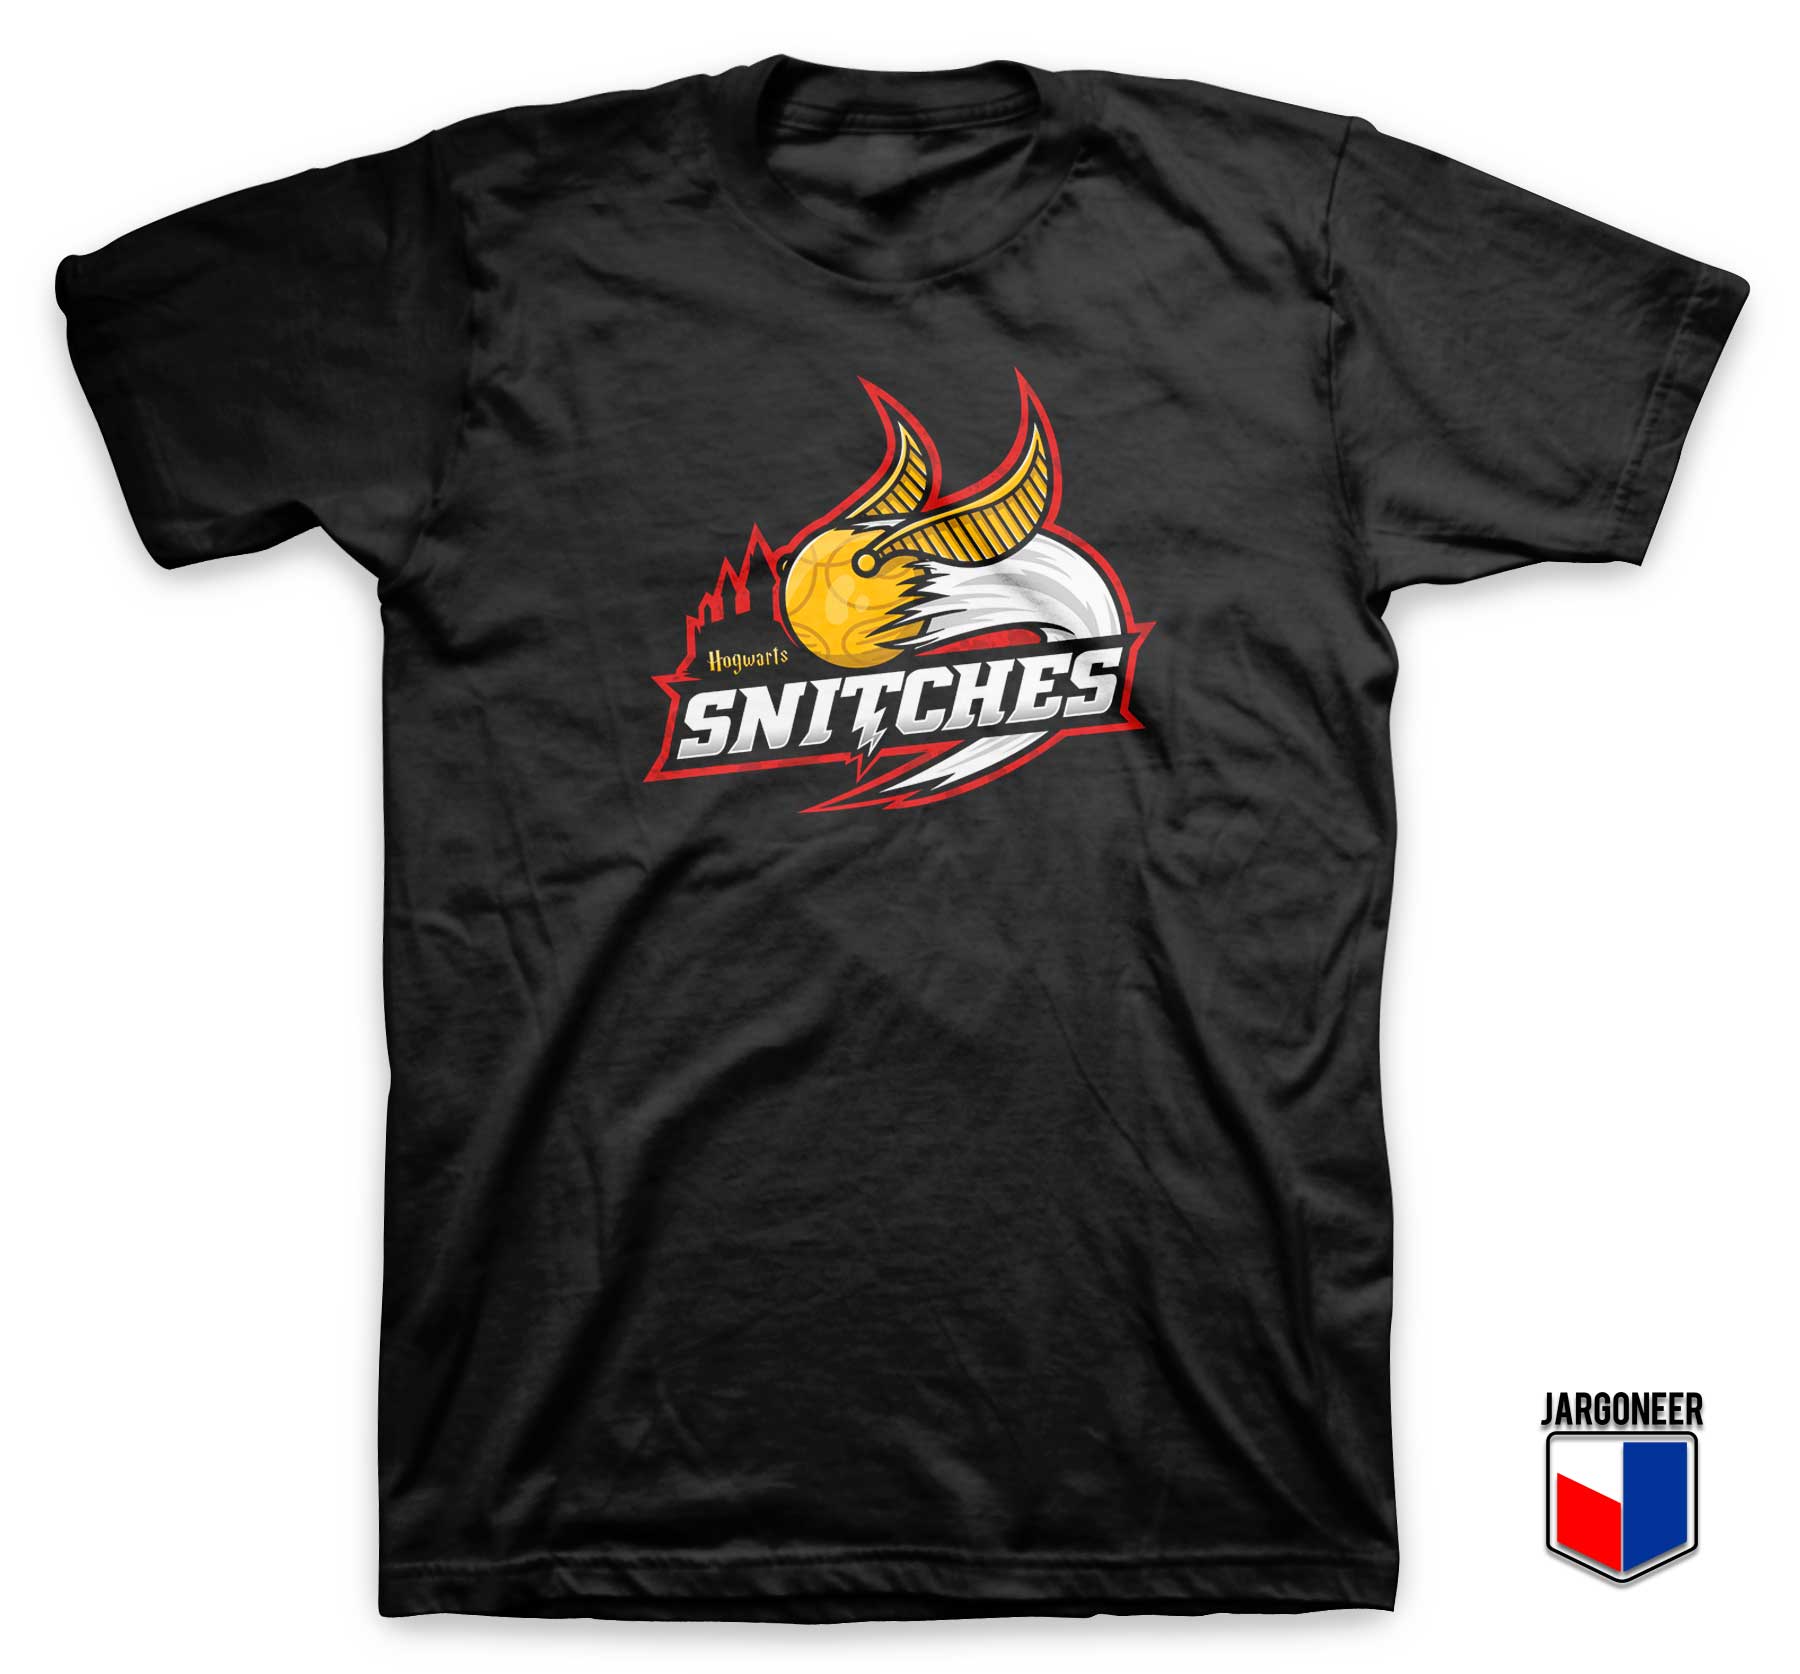 Hogwarts Snitches Championship T Shirt - Shop Unique Graphic Cool Shirt Designs